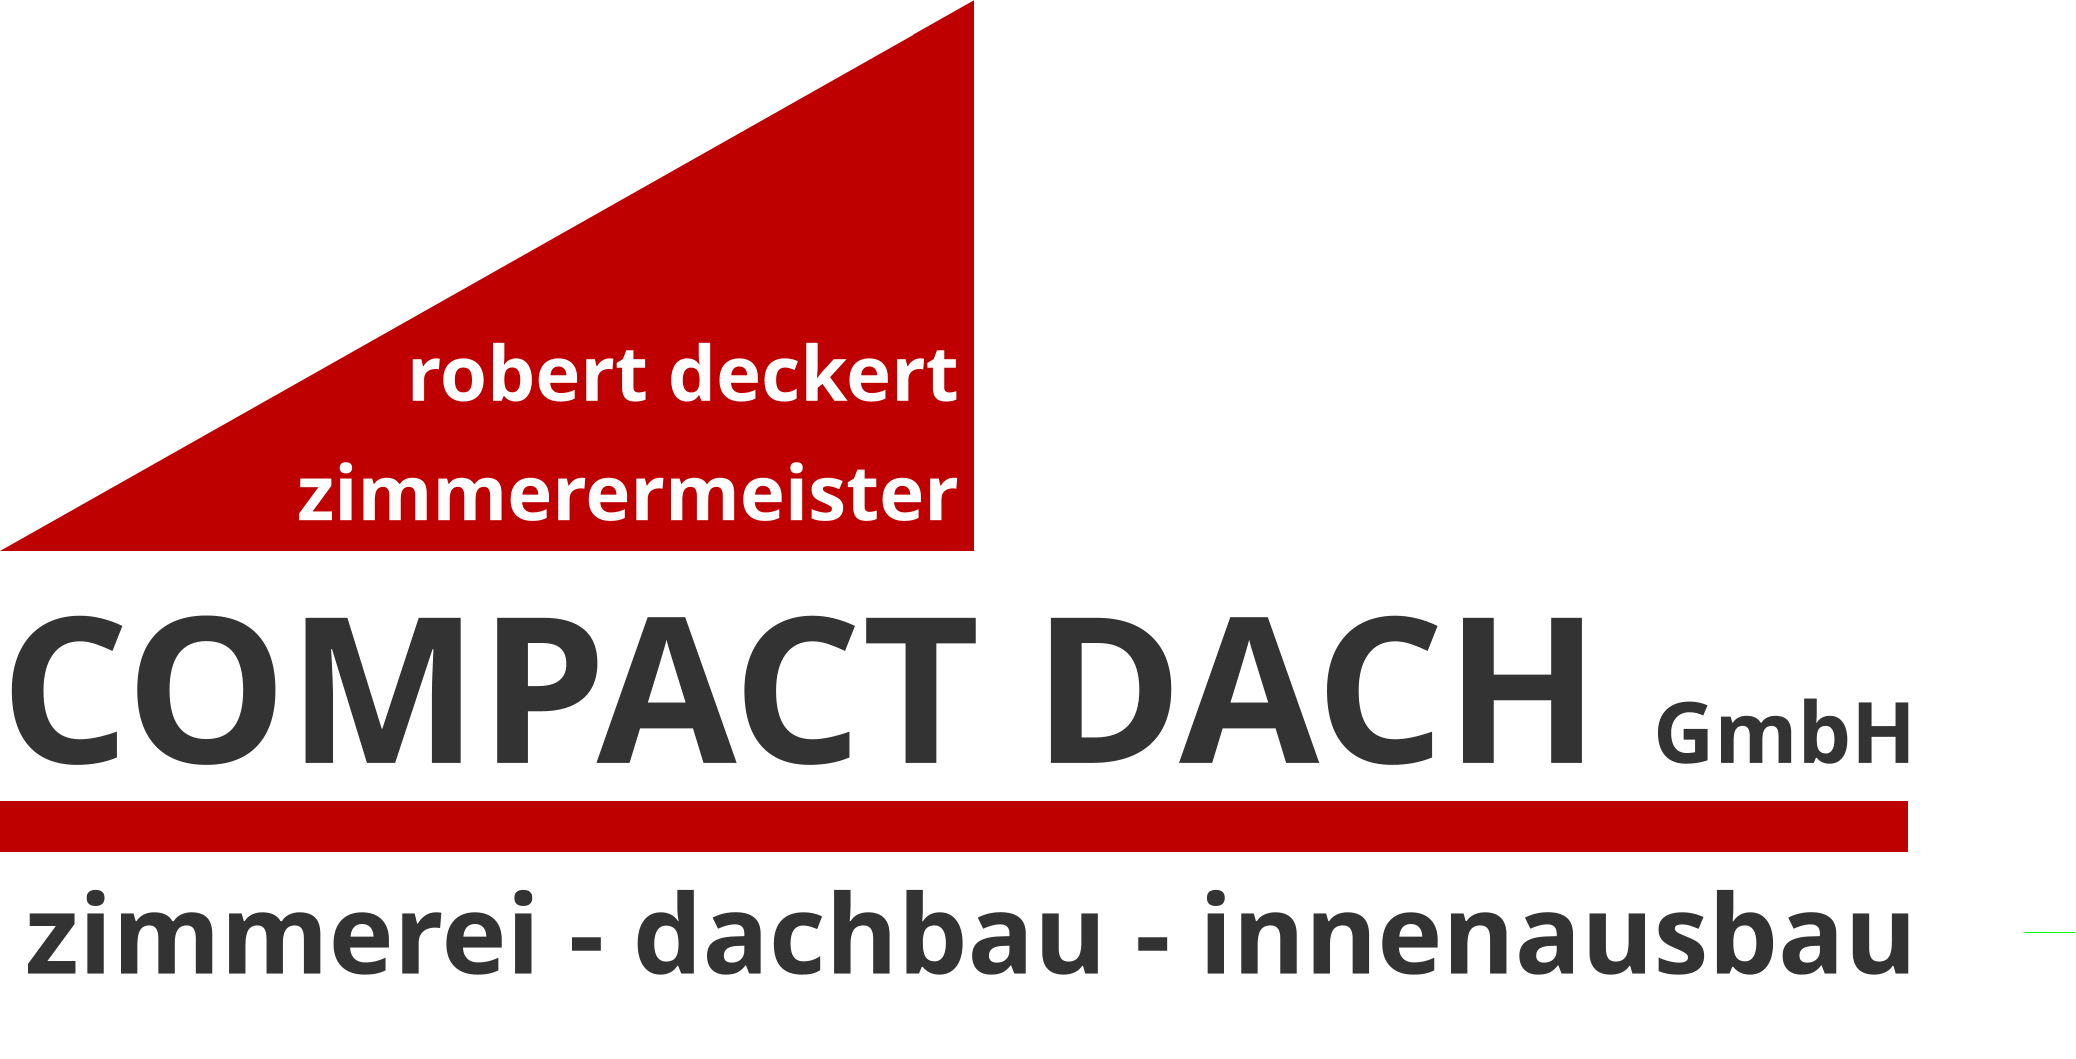 COMPACT DACH GmbH